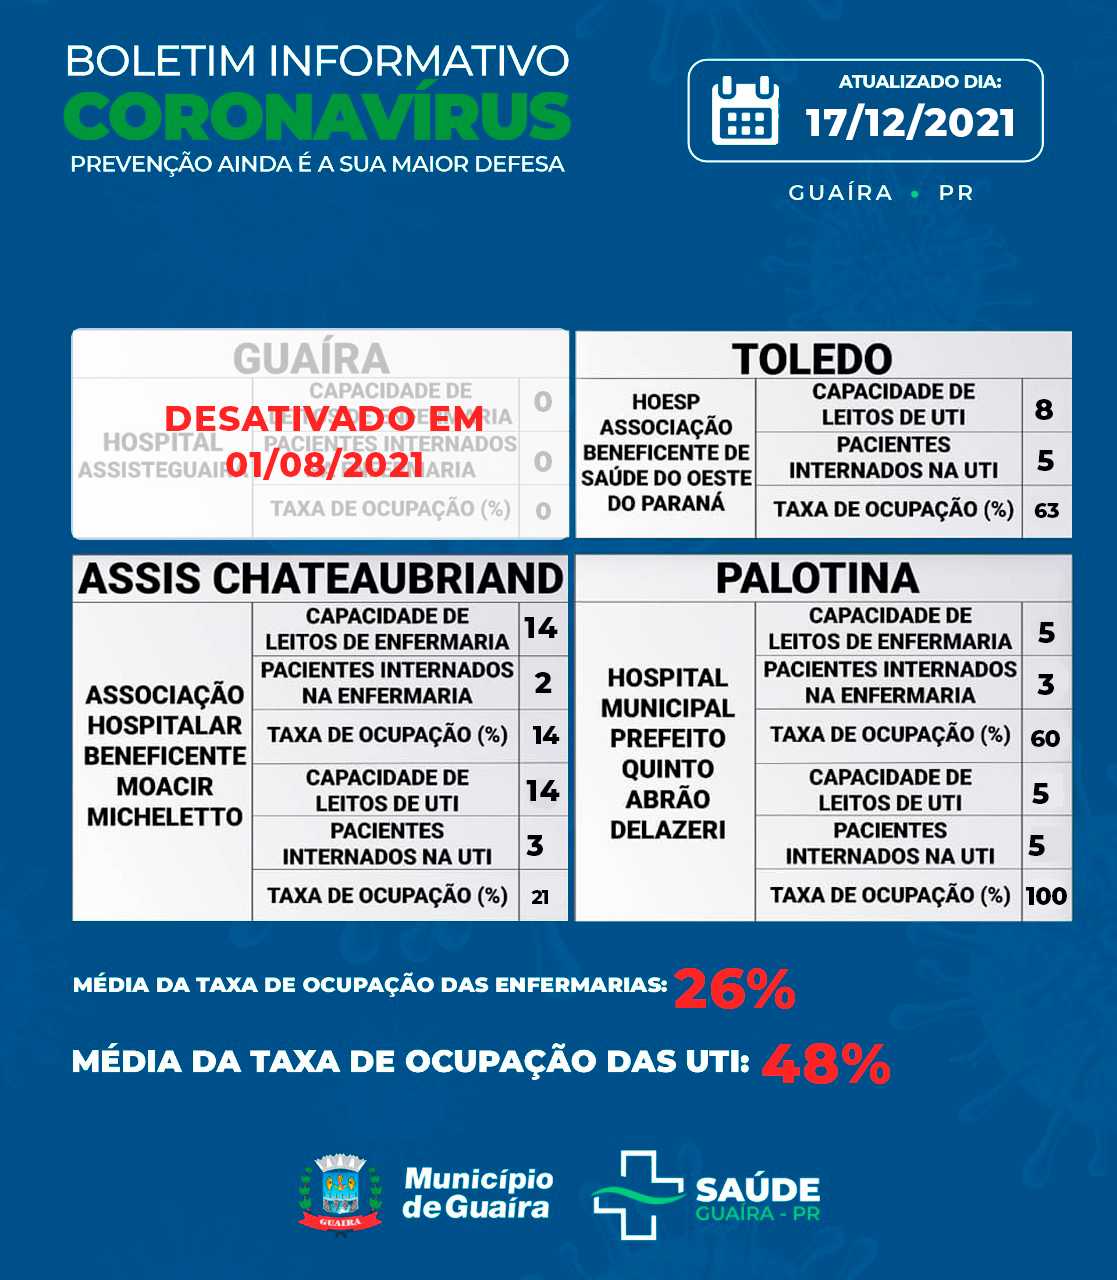 Guaíra - Saúde informa 5 casos ativos e 4162 recuperados da Covid-19 • Portal Guaíra